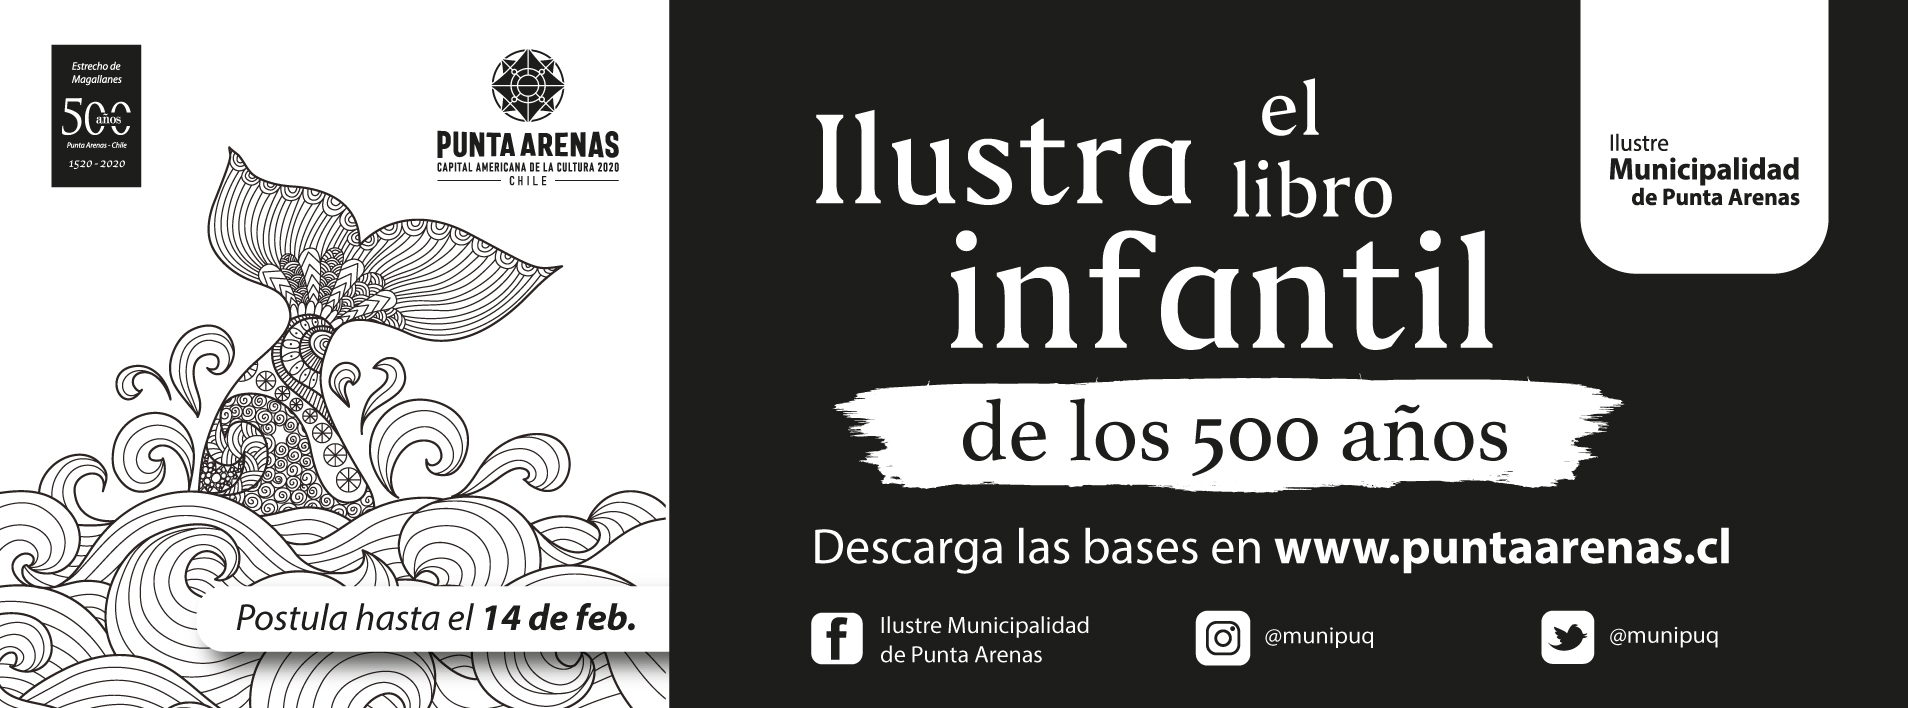 Lanzan concurso de ilustraciones para libro infantil que relata viaje de Hernando de Magallanes y Sebastian Elcano